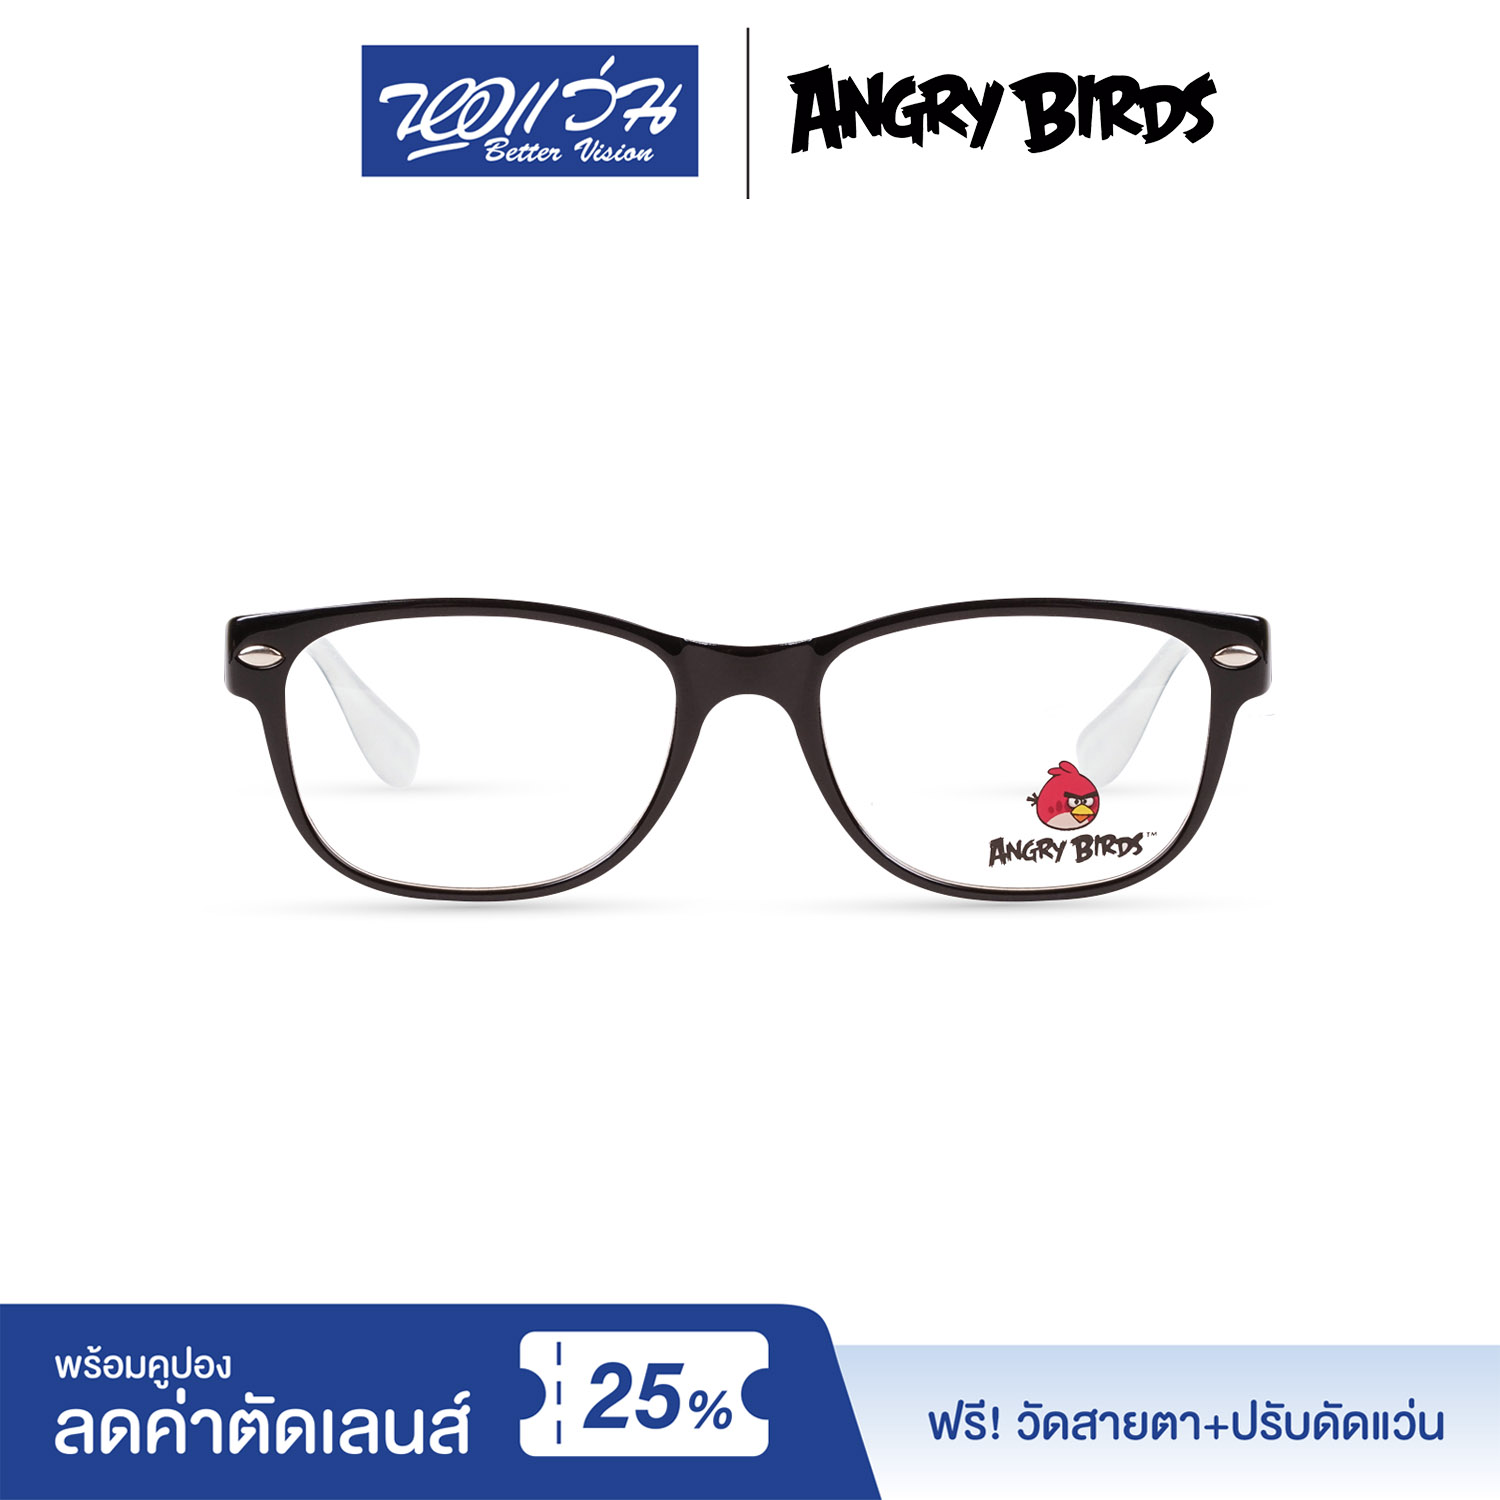 กรอบแว่นตาเด็ก แองกี้ เบิร์ด ANGRY BIRDS Child glasses แถมฟรีส่วนลดค่าตัดเลนส์ 25%  free 25% lens discount รุ่น FAG22205